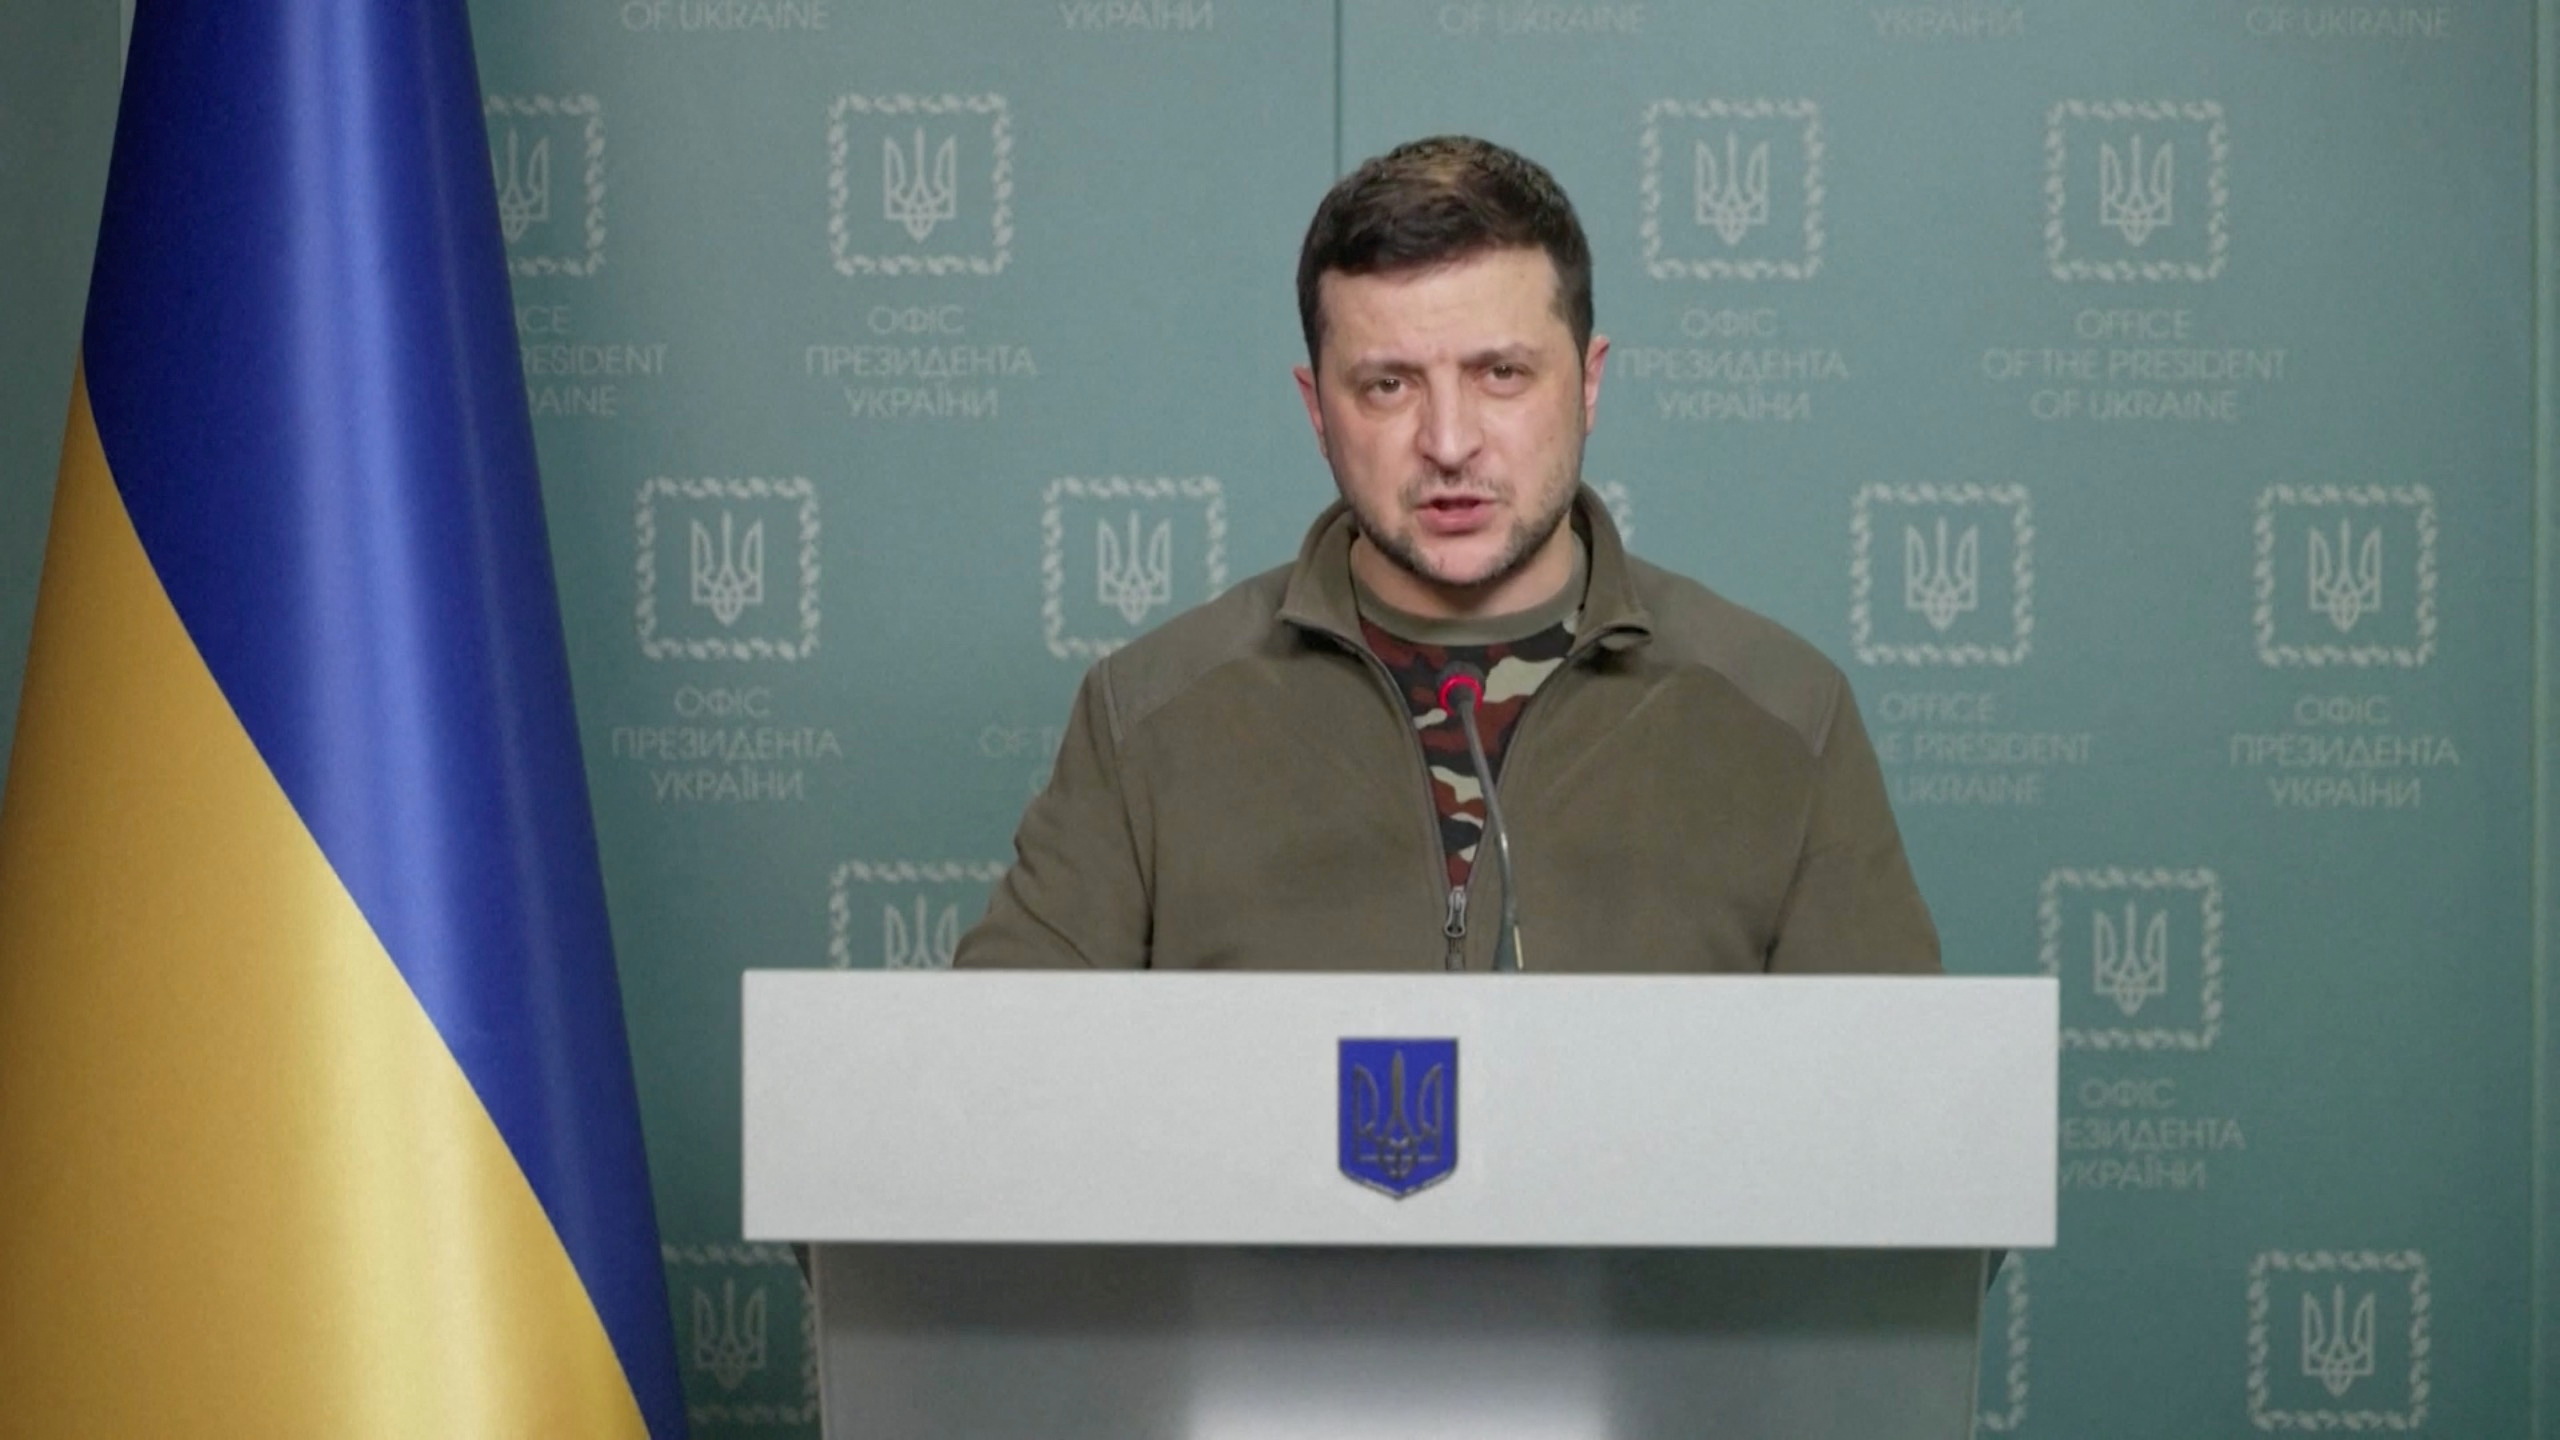 Ζελένσκι: Ζώνη απαγόρευσης πτήσεων στην Ουκρανία αλλιώς «θα δείτε ρουκέτες σε έδαφος του ΝΑΤΟ»